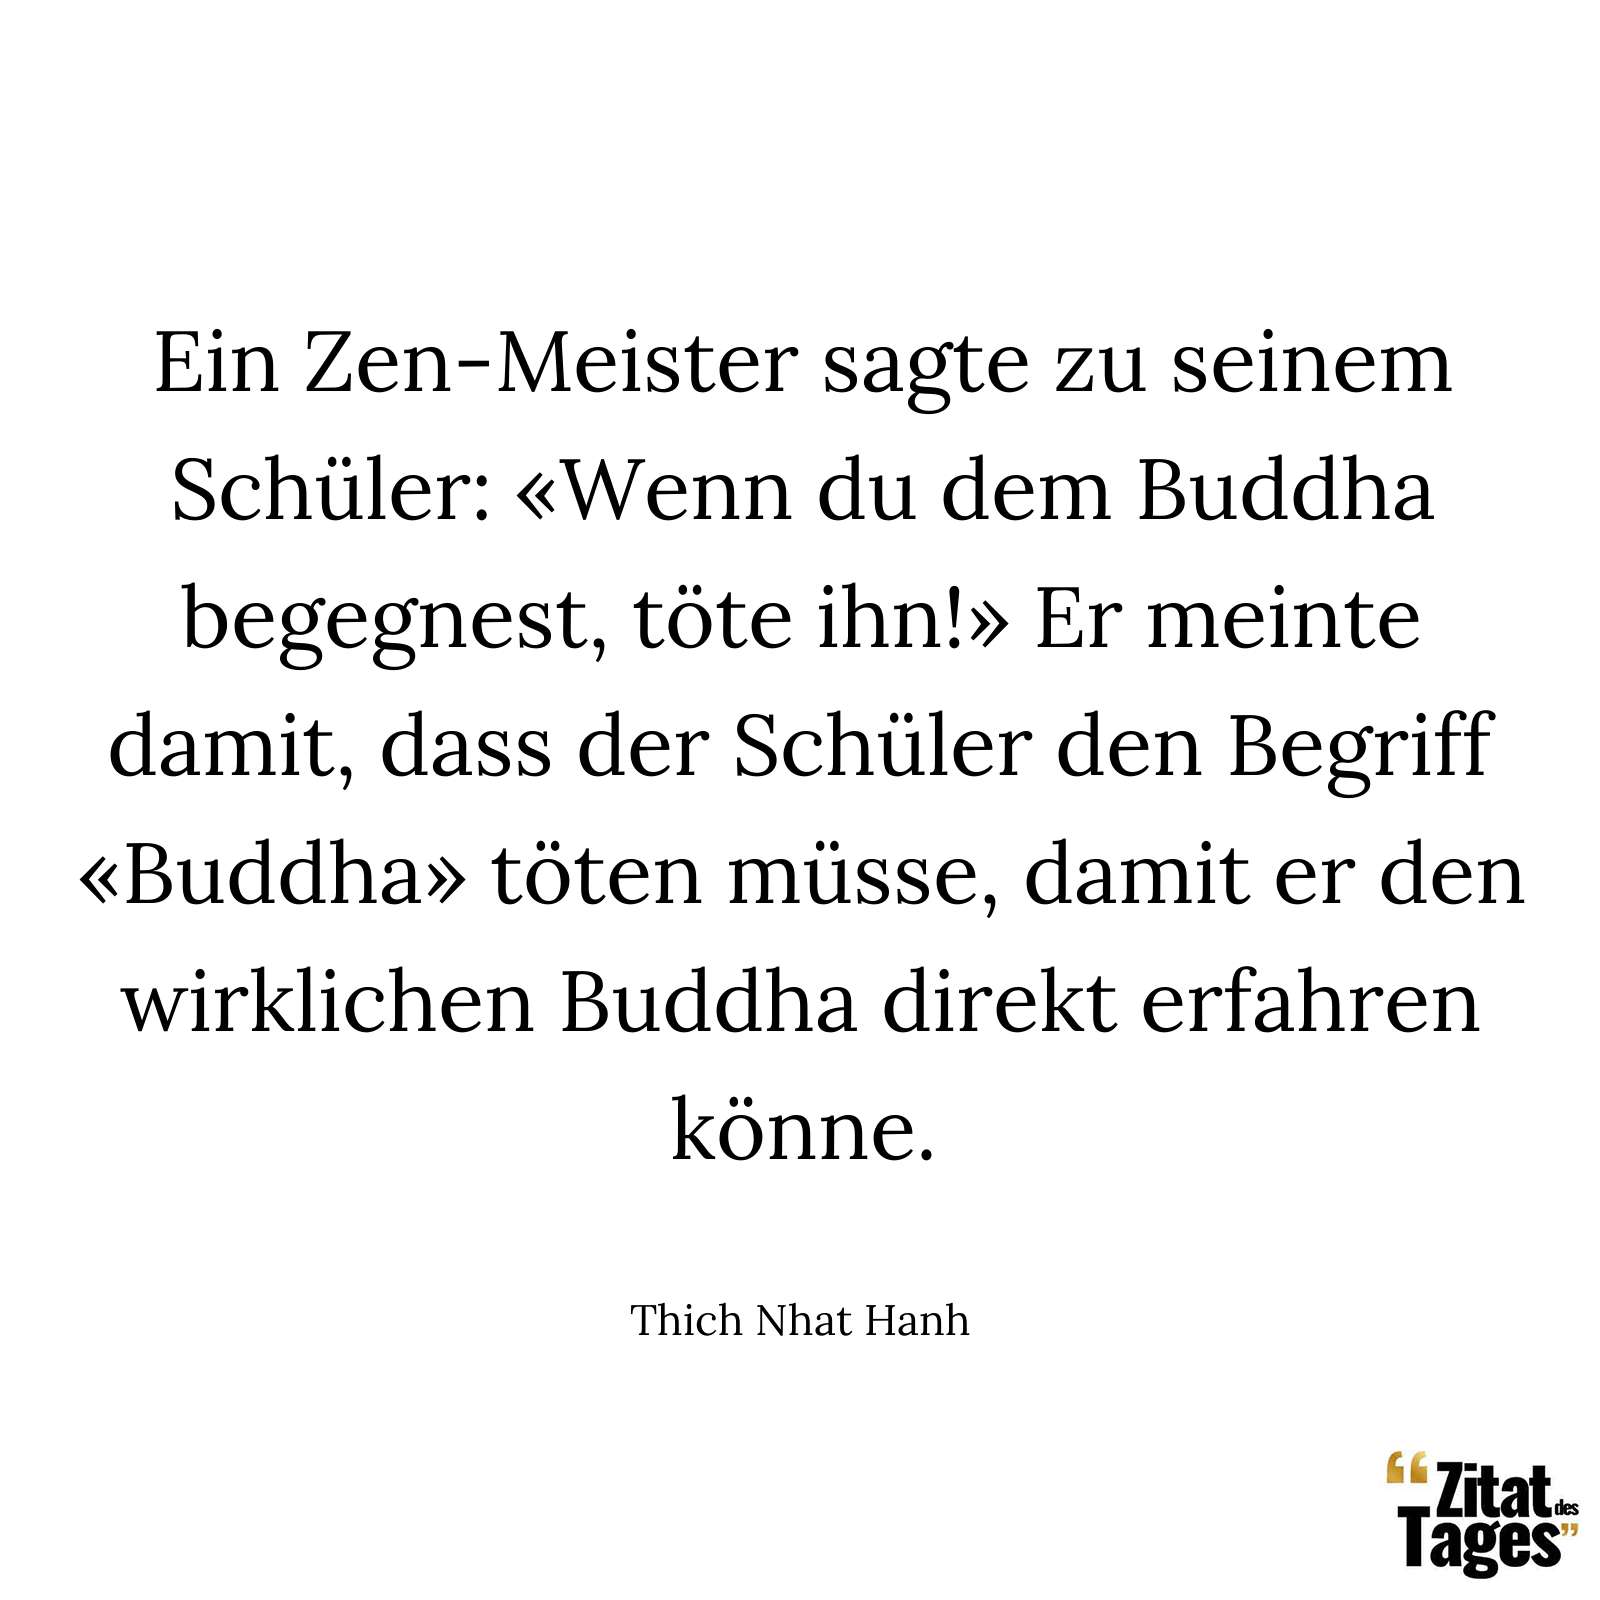 Ein Zen-Meister sagte zu seinem Schüler: «Wenn du dem Buddha begegnest, töte ihn!» Er meinte damit, dass der Schüler den Begriff «Buddha» töten müsse, damit er den wirklichen Buddha direkt erfahren könne. - Thich Nhat Hanh